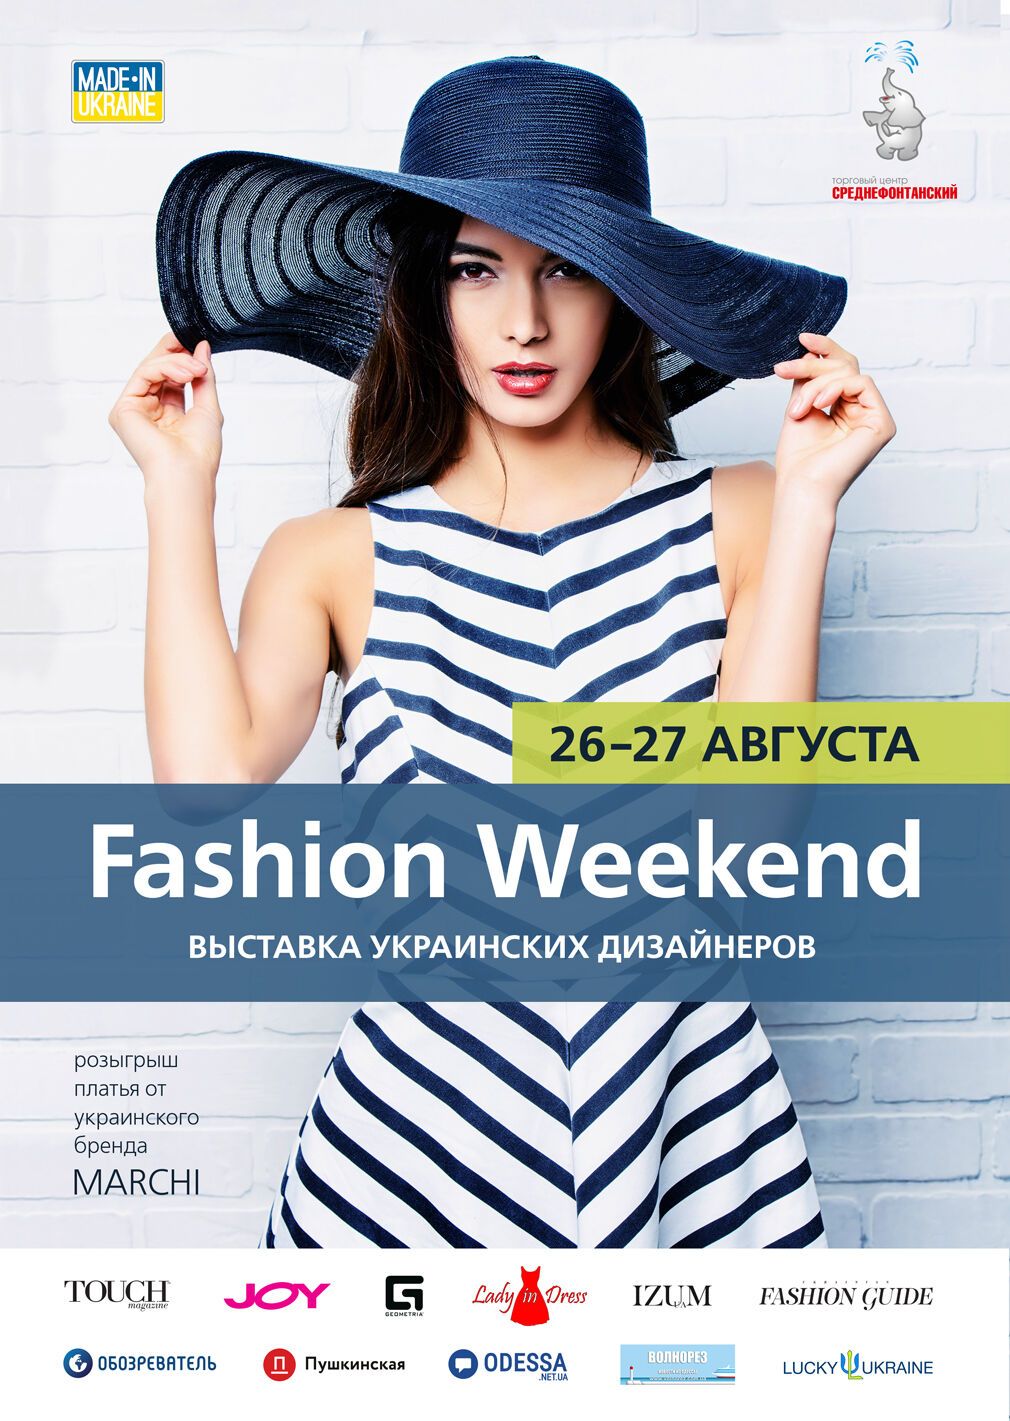 Fashion Weekend с украинскими дизайнерами пройдет в ТРЦ Среднефонтанский 